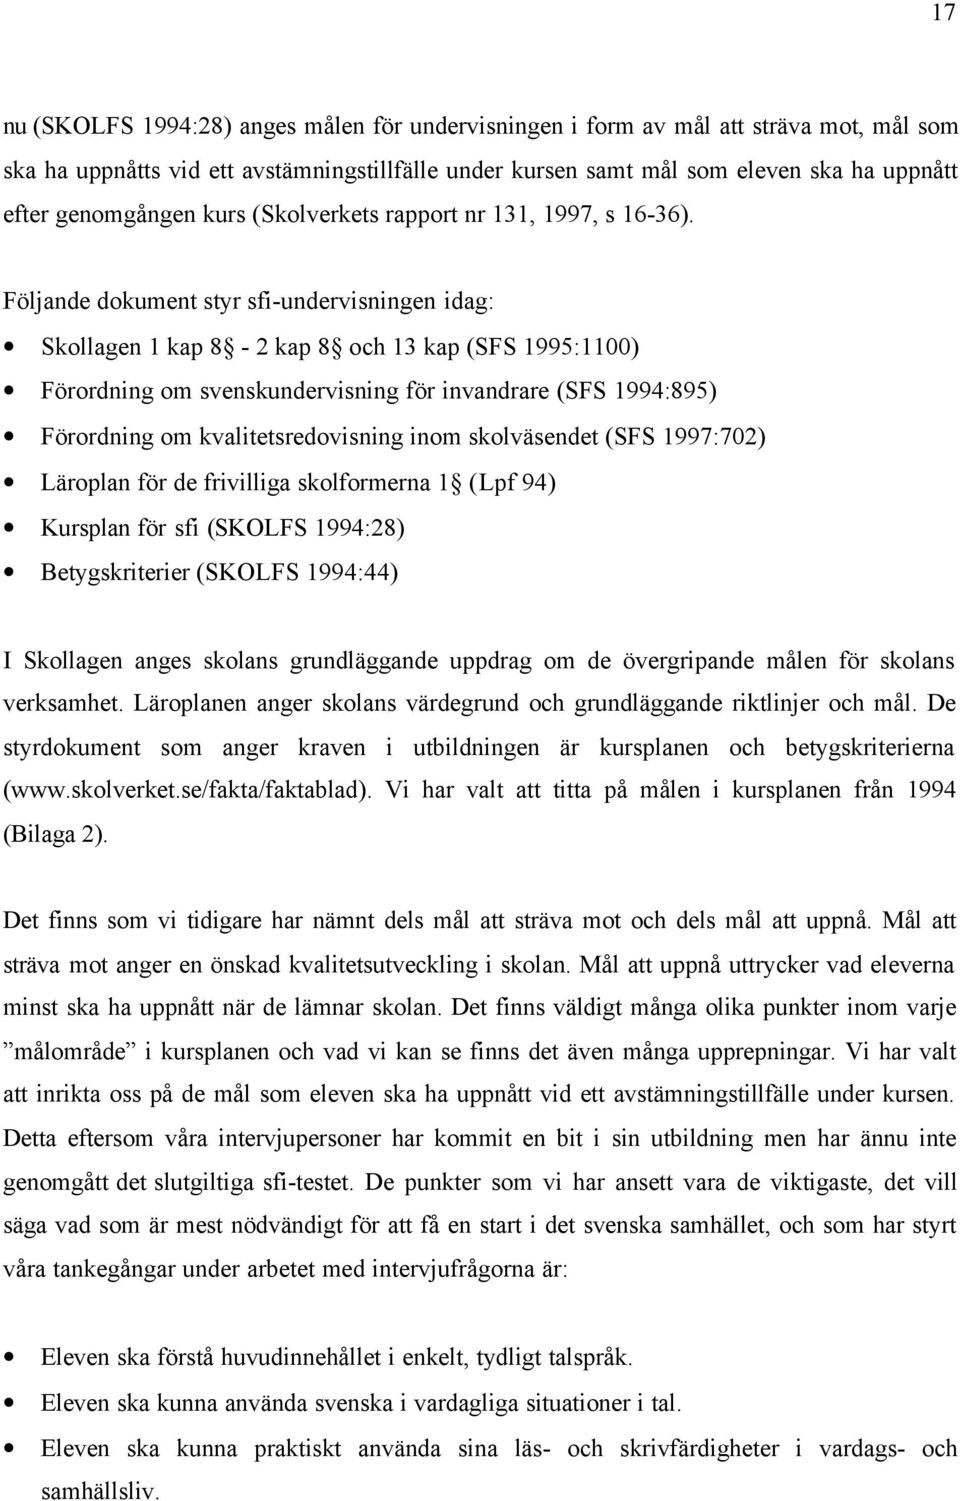 Följande dokument styr sfi-undervisningen idag: Skollagen 1 kap 8-2 kap 8 och 13 kap (SFS 1995:1100) Förordning om svenskundervisning för invandrare (SFS 1994:895) Förordning om kvalitetsredovisning